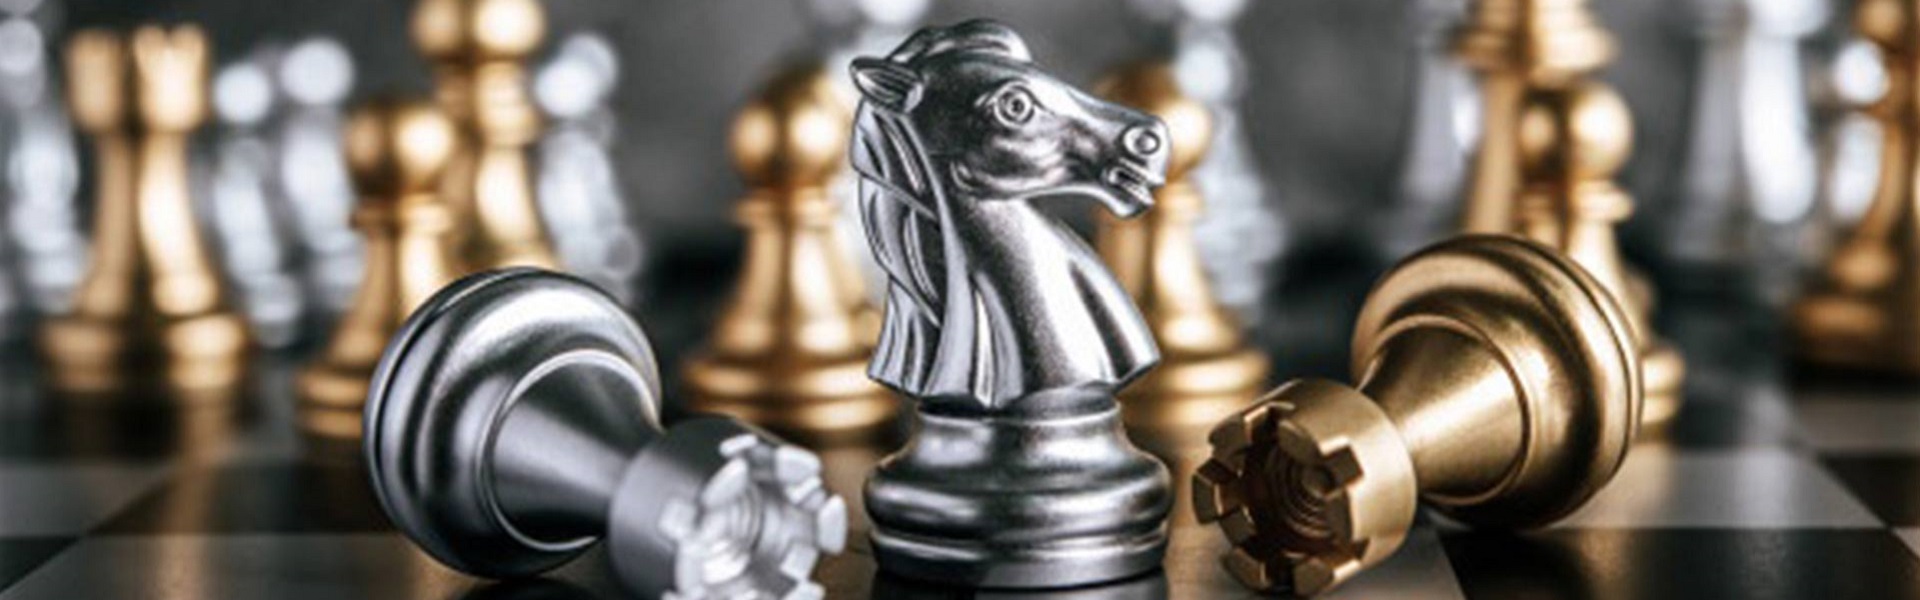 Cheap car rental Dubai  | Chess Lessons